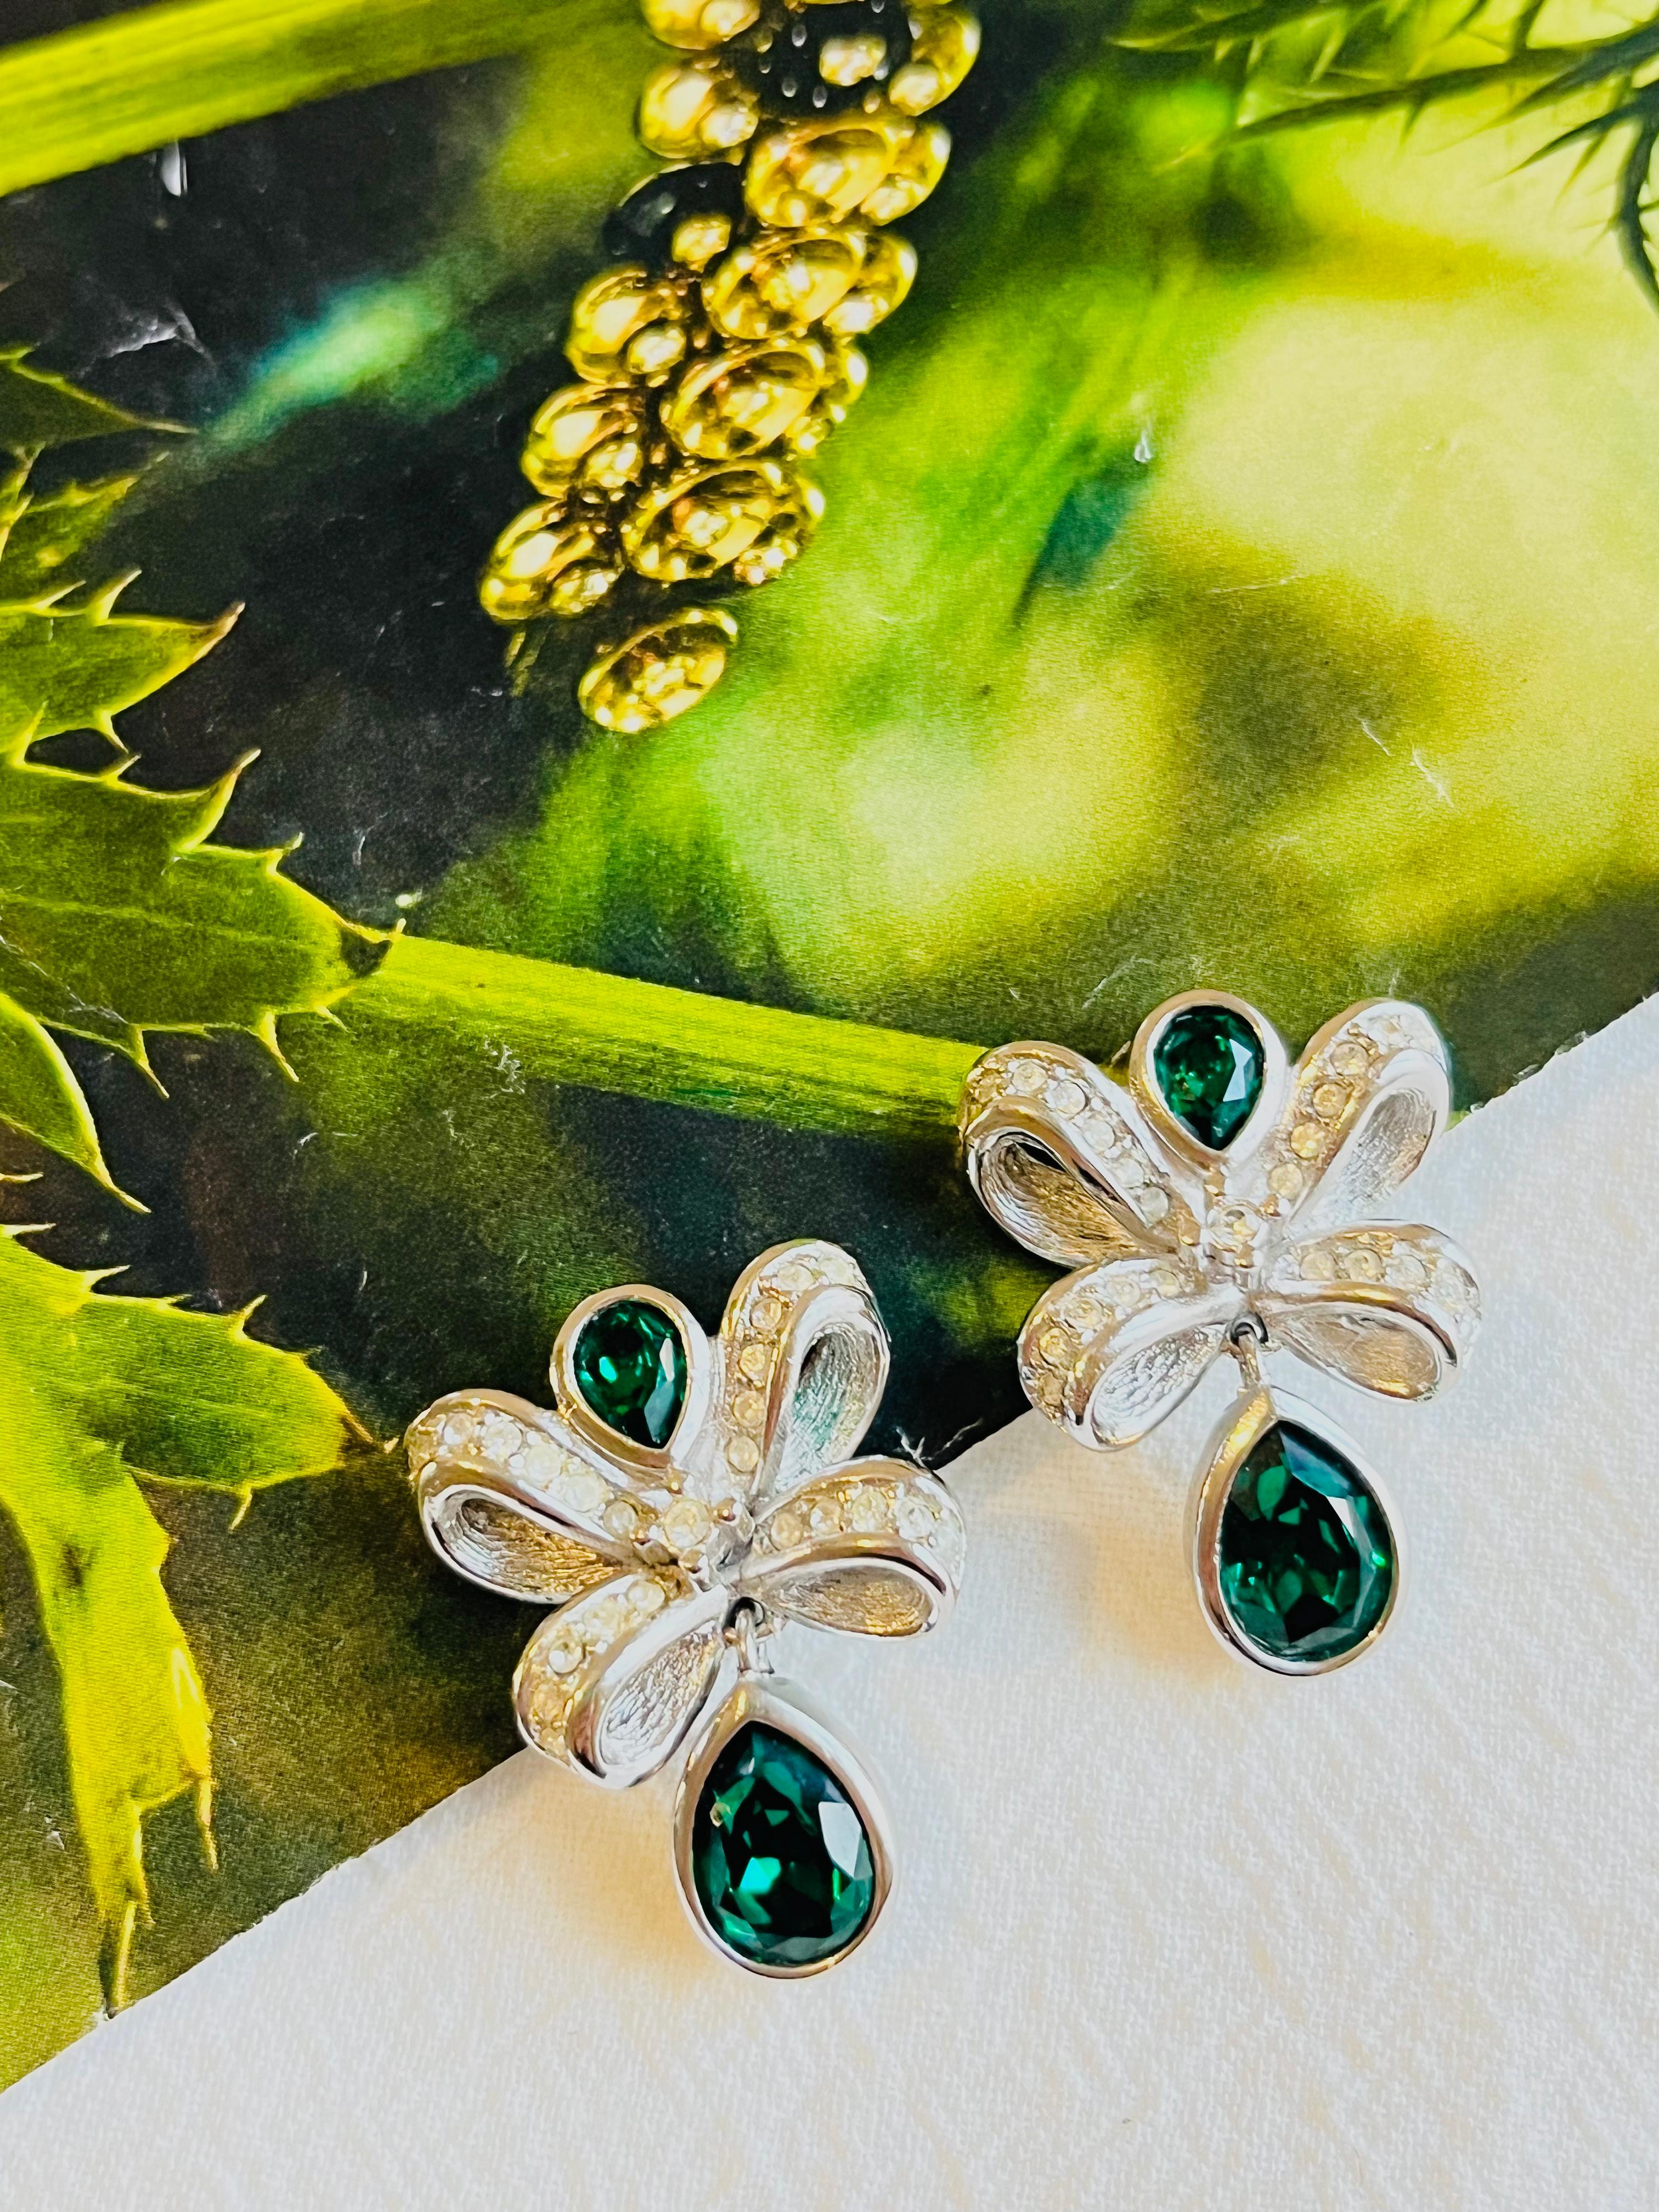 Christian Dior Vintage 1980er Jahre Knoten Bogen Kristalle Smaragd Wassertropfen Clip-Ohrringe, Silber-Ton

Sehr guter Zustand. 100% echt. Selten zu finden.

Ein sehr schönes Paar Ohrclips von Chr. DIOR, signiert auf der Rückseite.

MATERIAL: